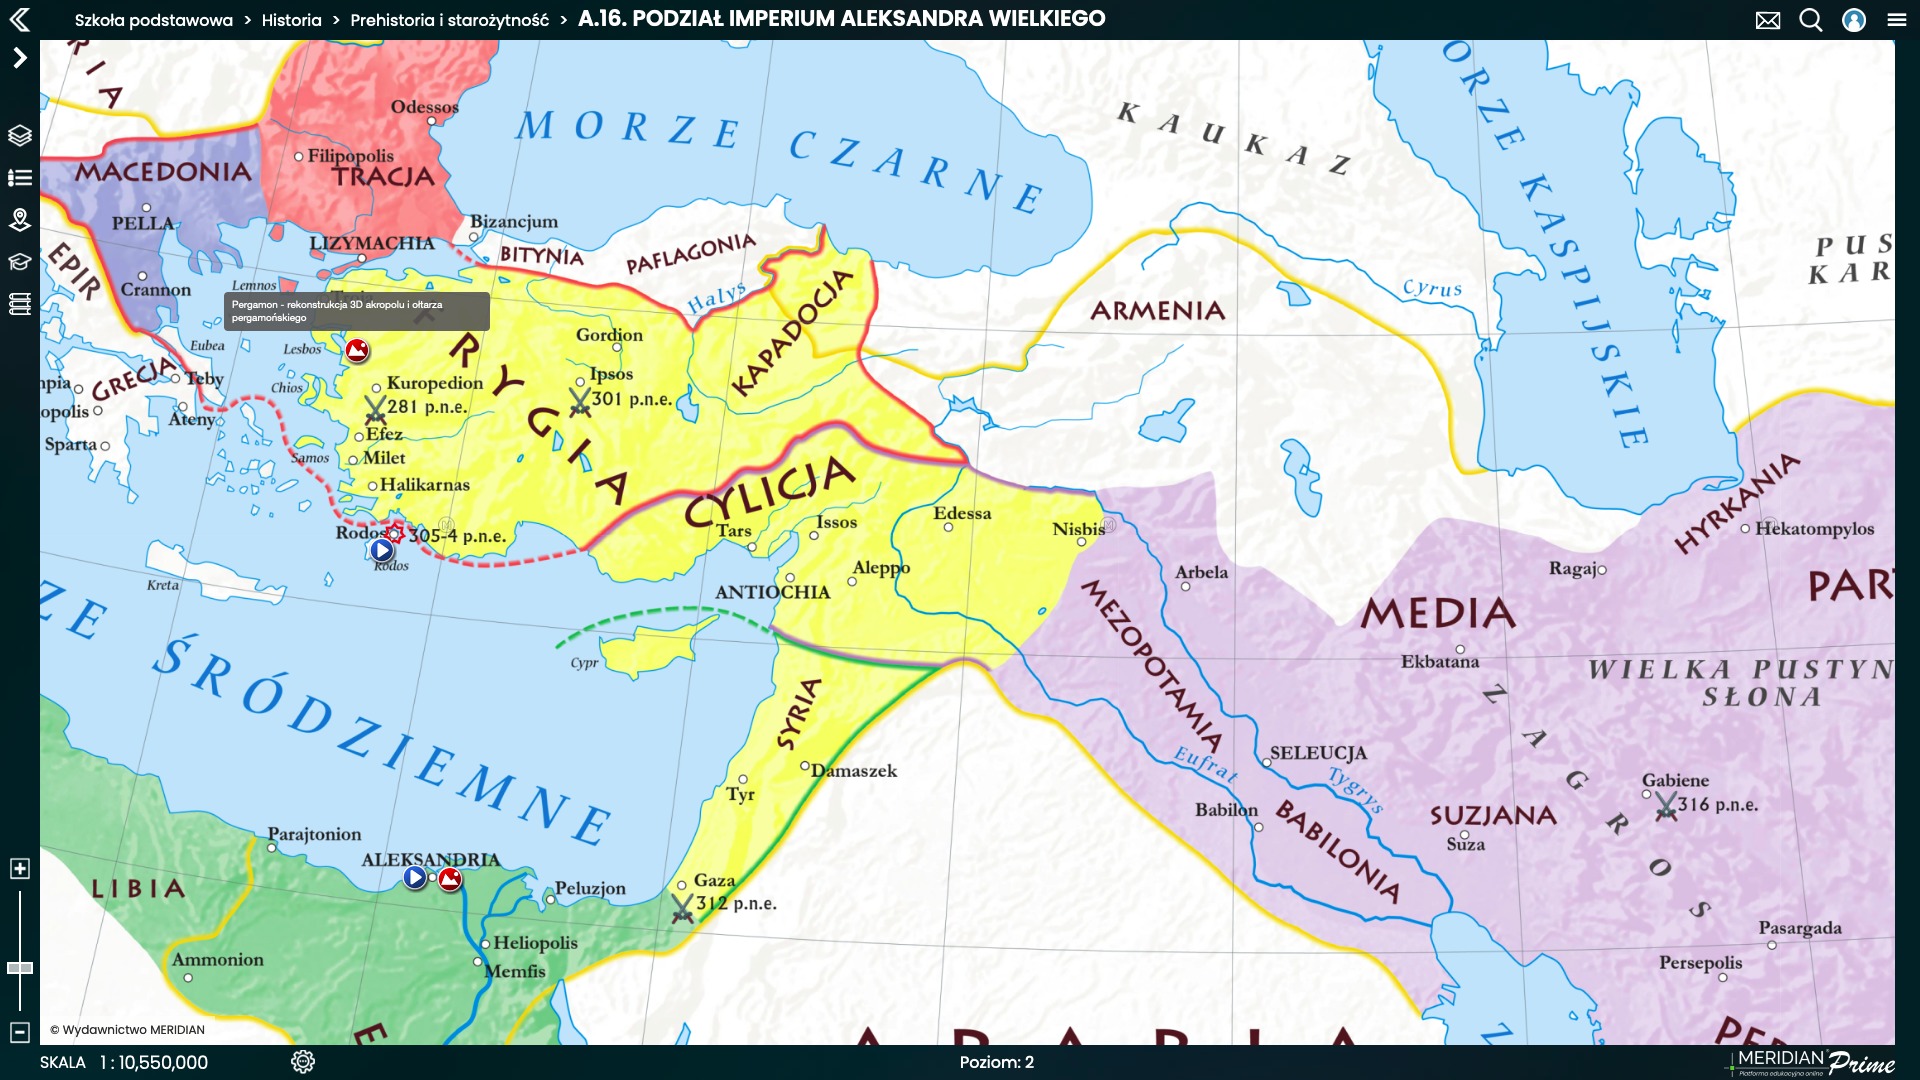 Podzial imperium Aleksandra Wielkiego frag